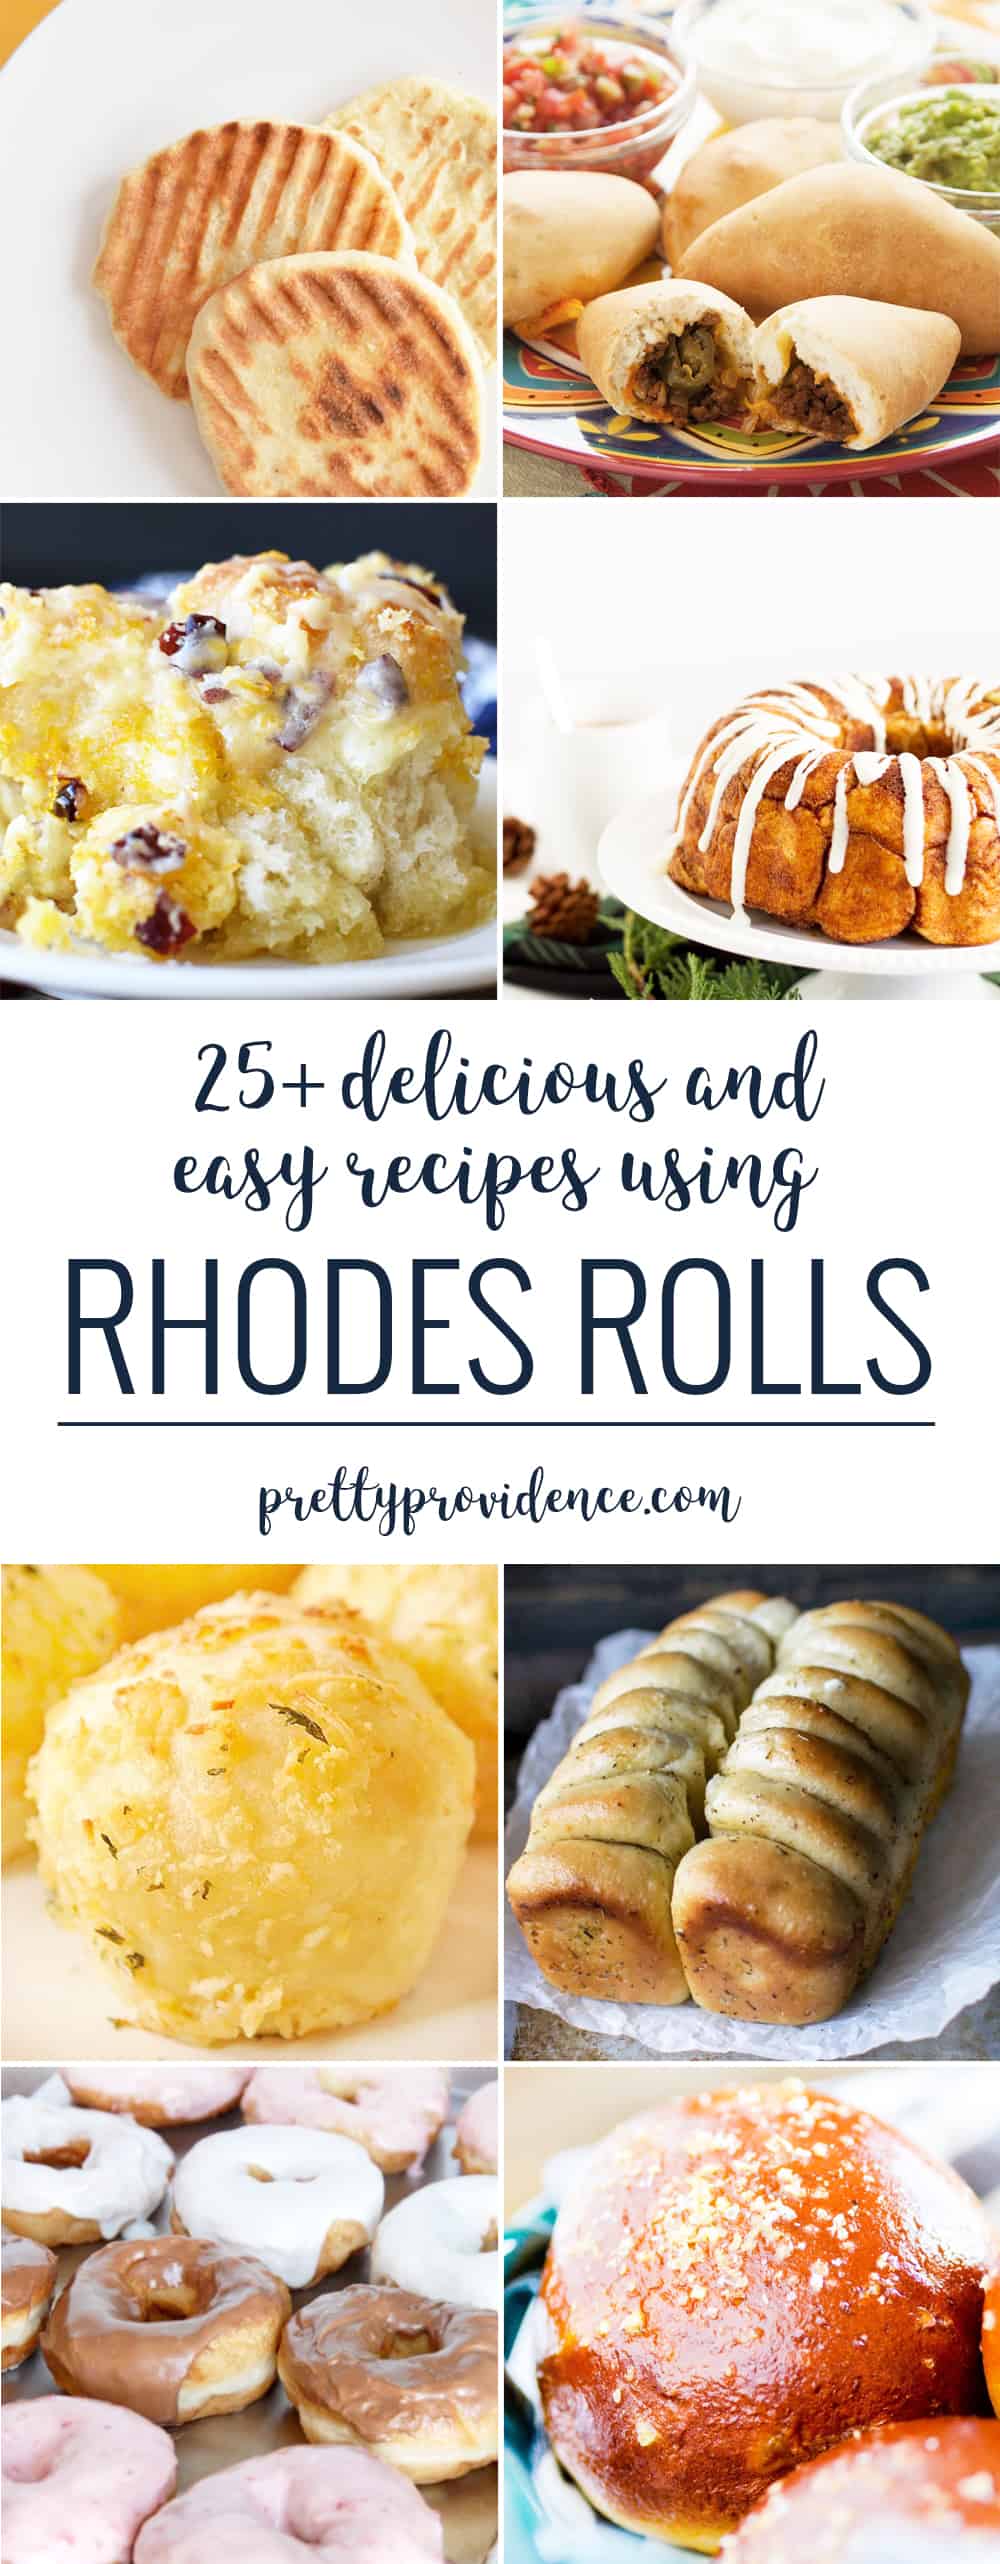 Delicious & Easy Rhodes Rolls Recipes